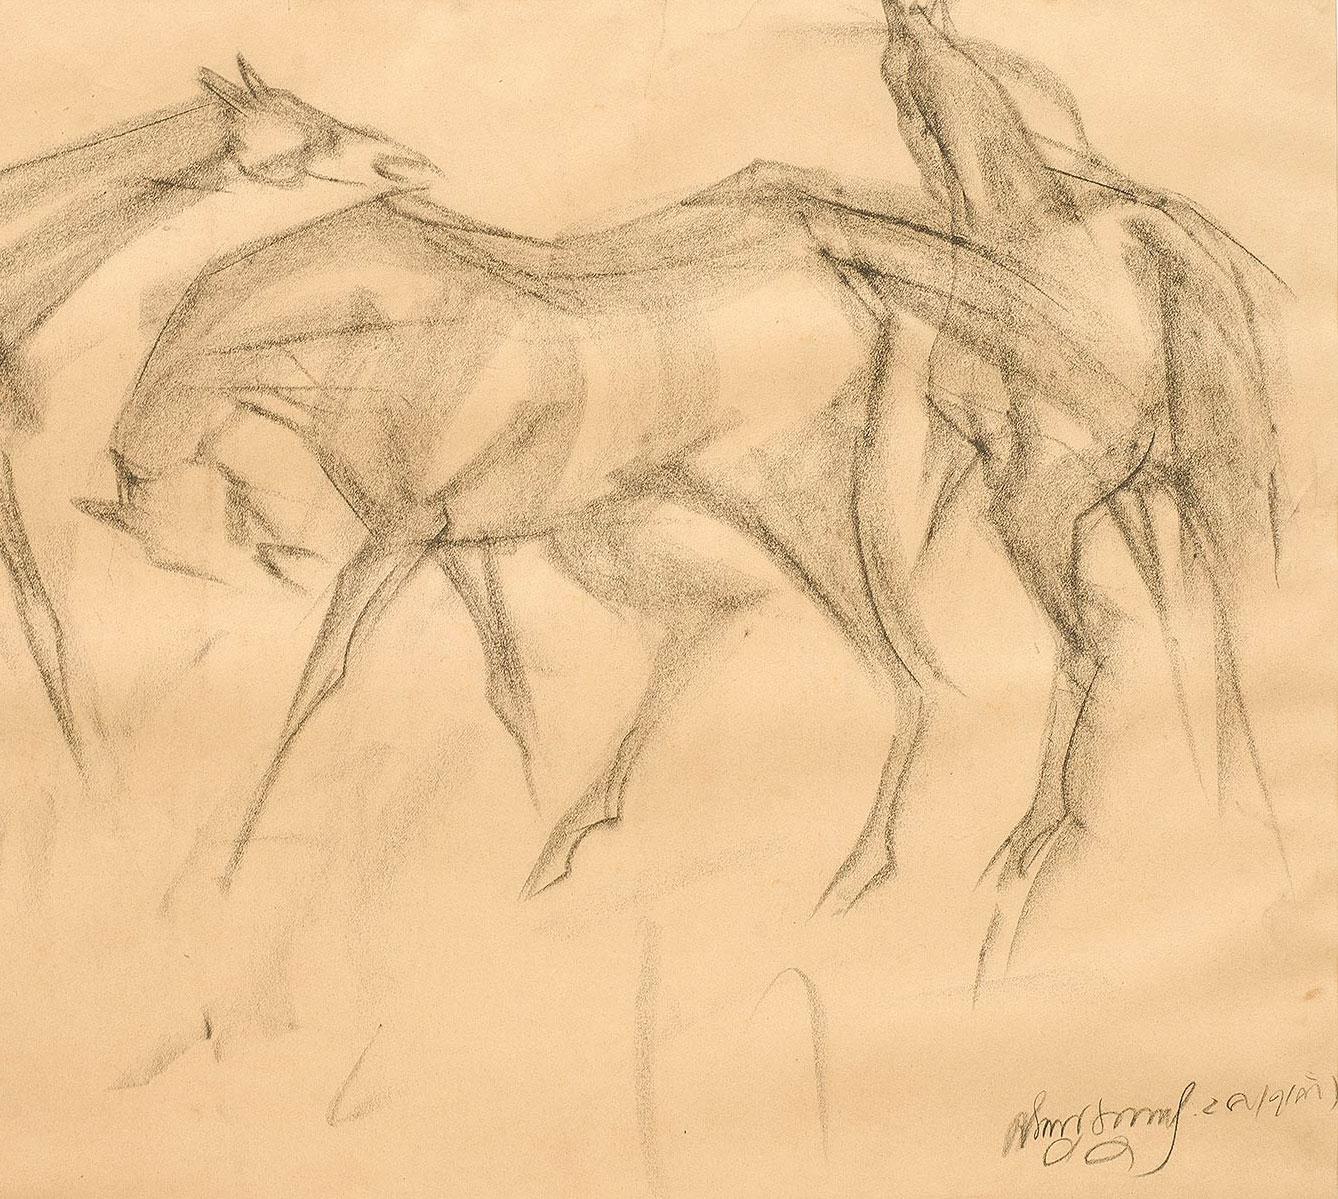 Frhe Pferde VI, Holzkohle-Zeichnung, braun, schwarz, vom indischen Knstler In Stock (Grau), Animal Art, von Sunil Das